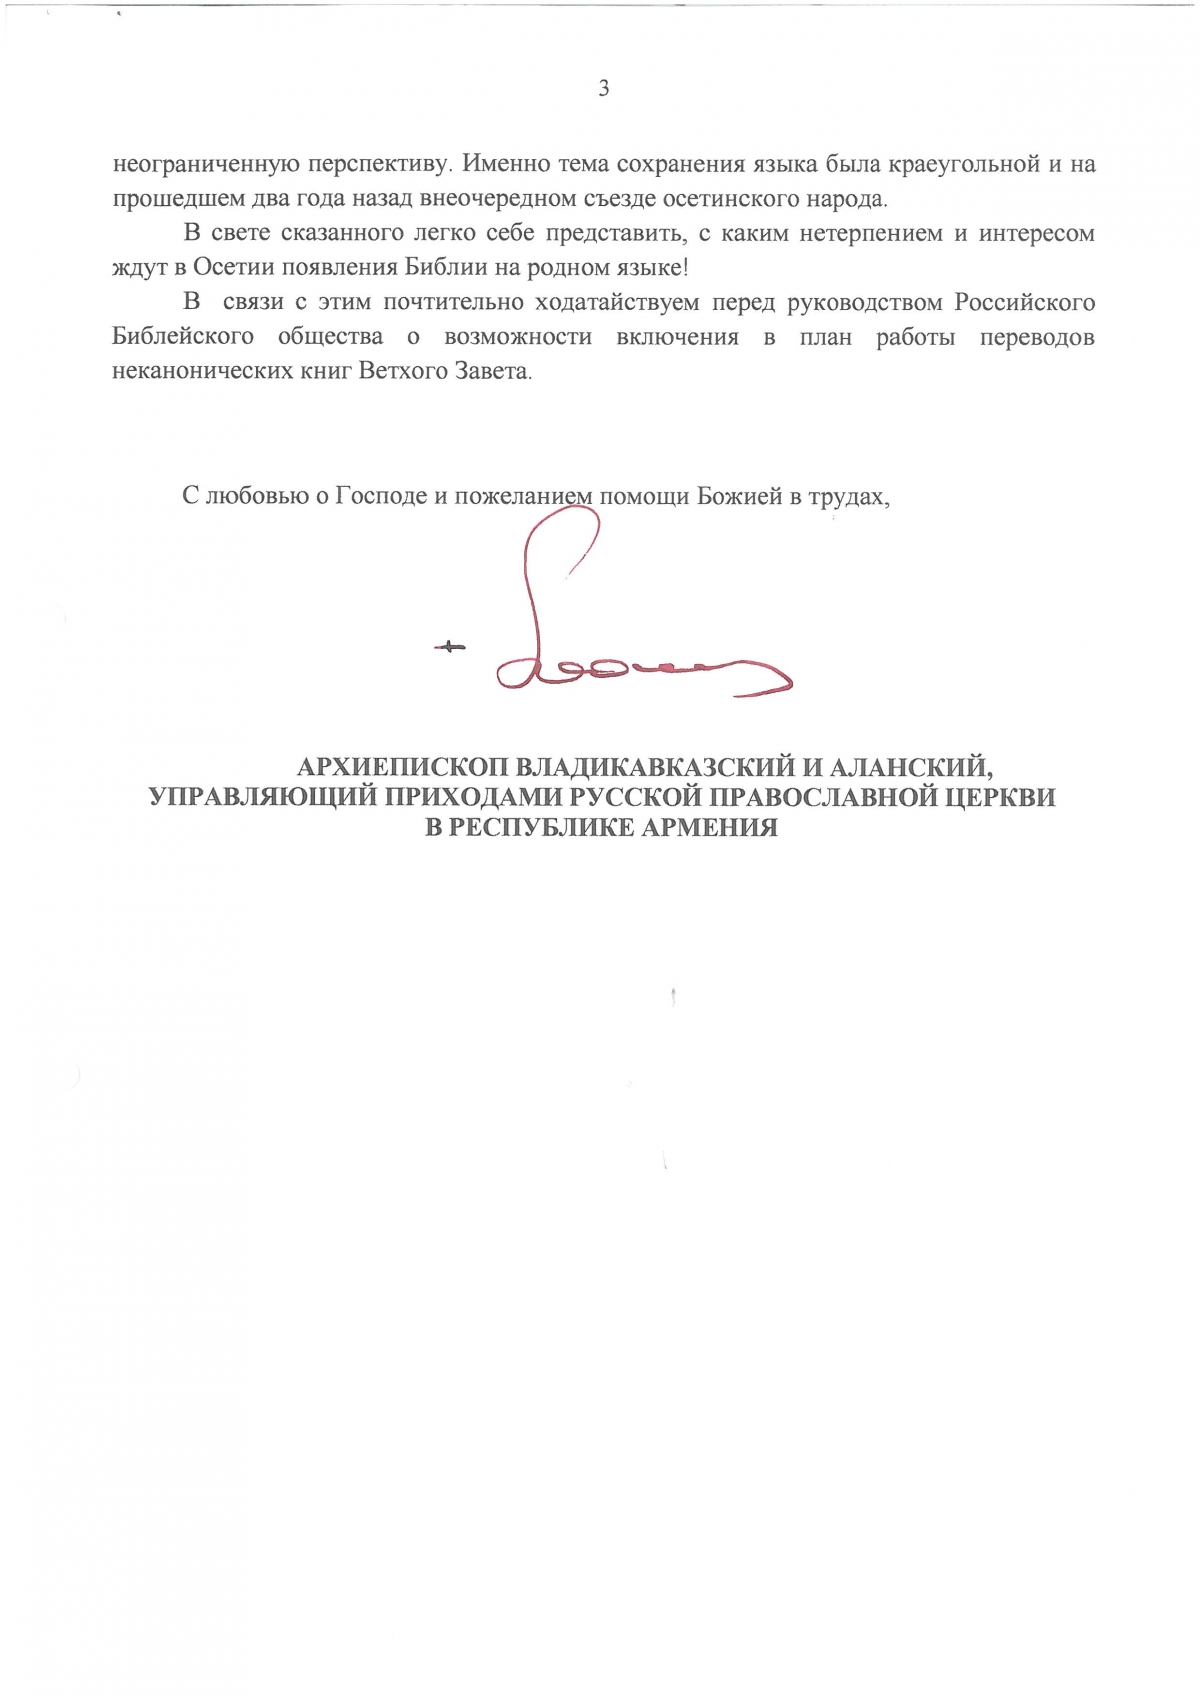 Письмо Архиепископа Владикавказского.jpg